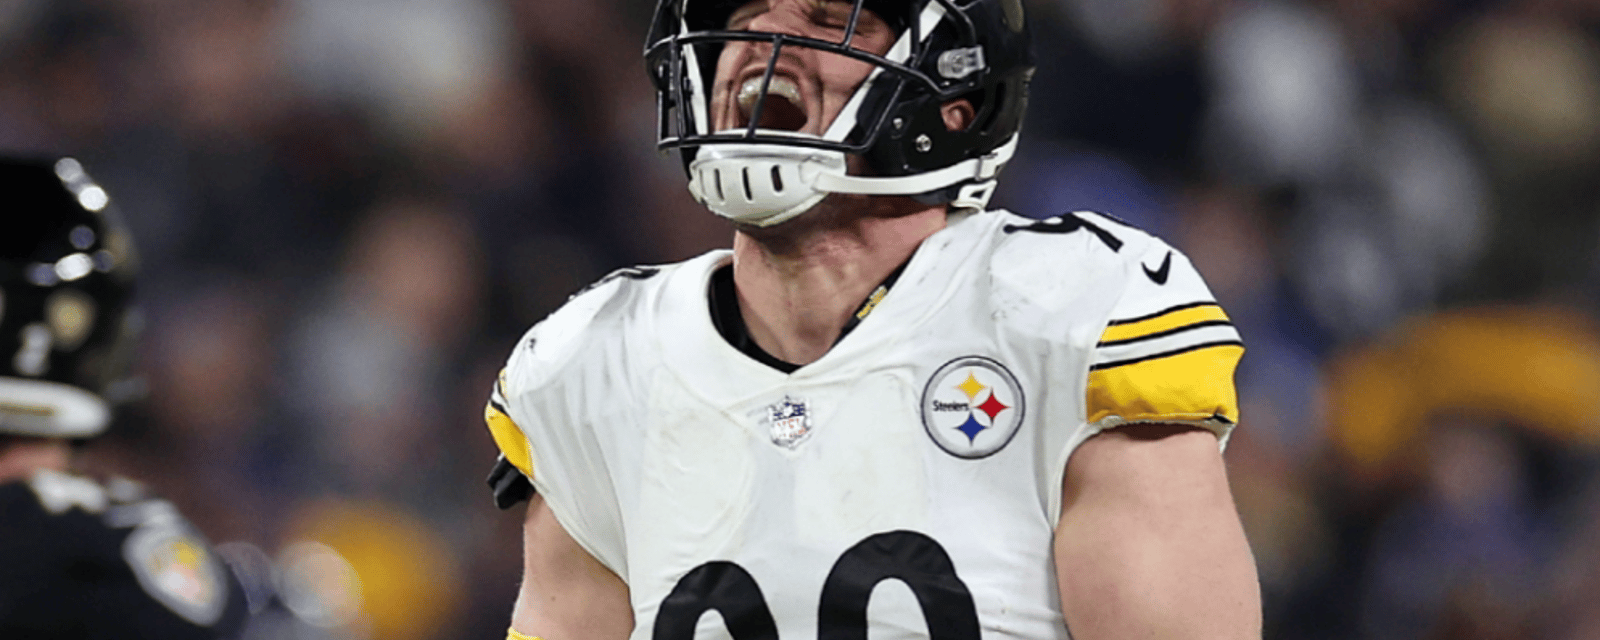 Steelers' T.J. Watt earns major honor from NFL